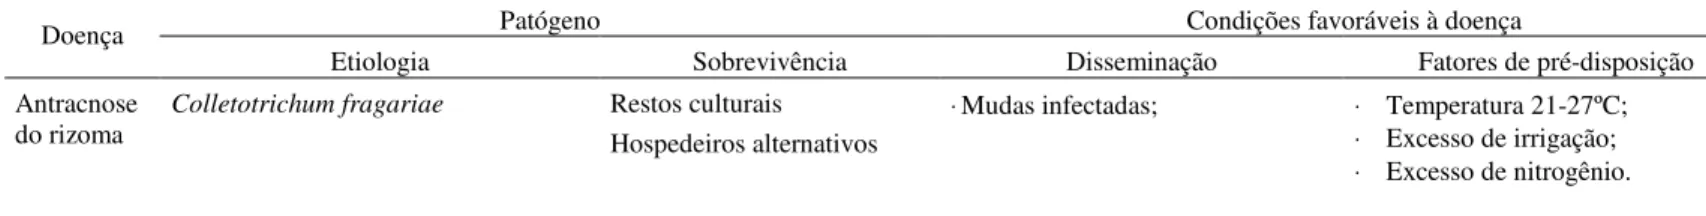 Tabela 2- Doenças do morangueiro, patógenos, condições favoráveis e táticas de manejo